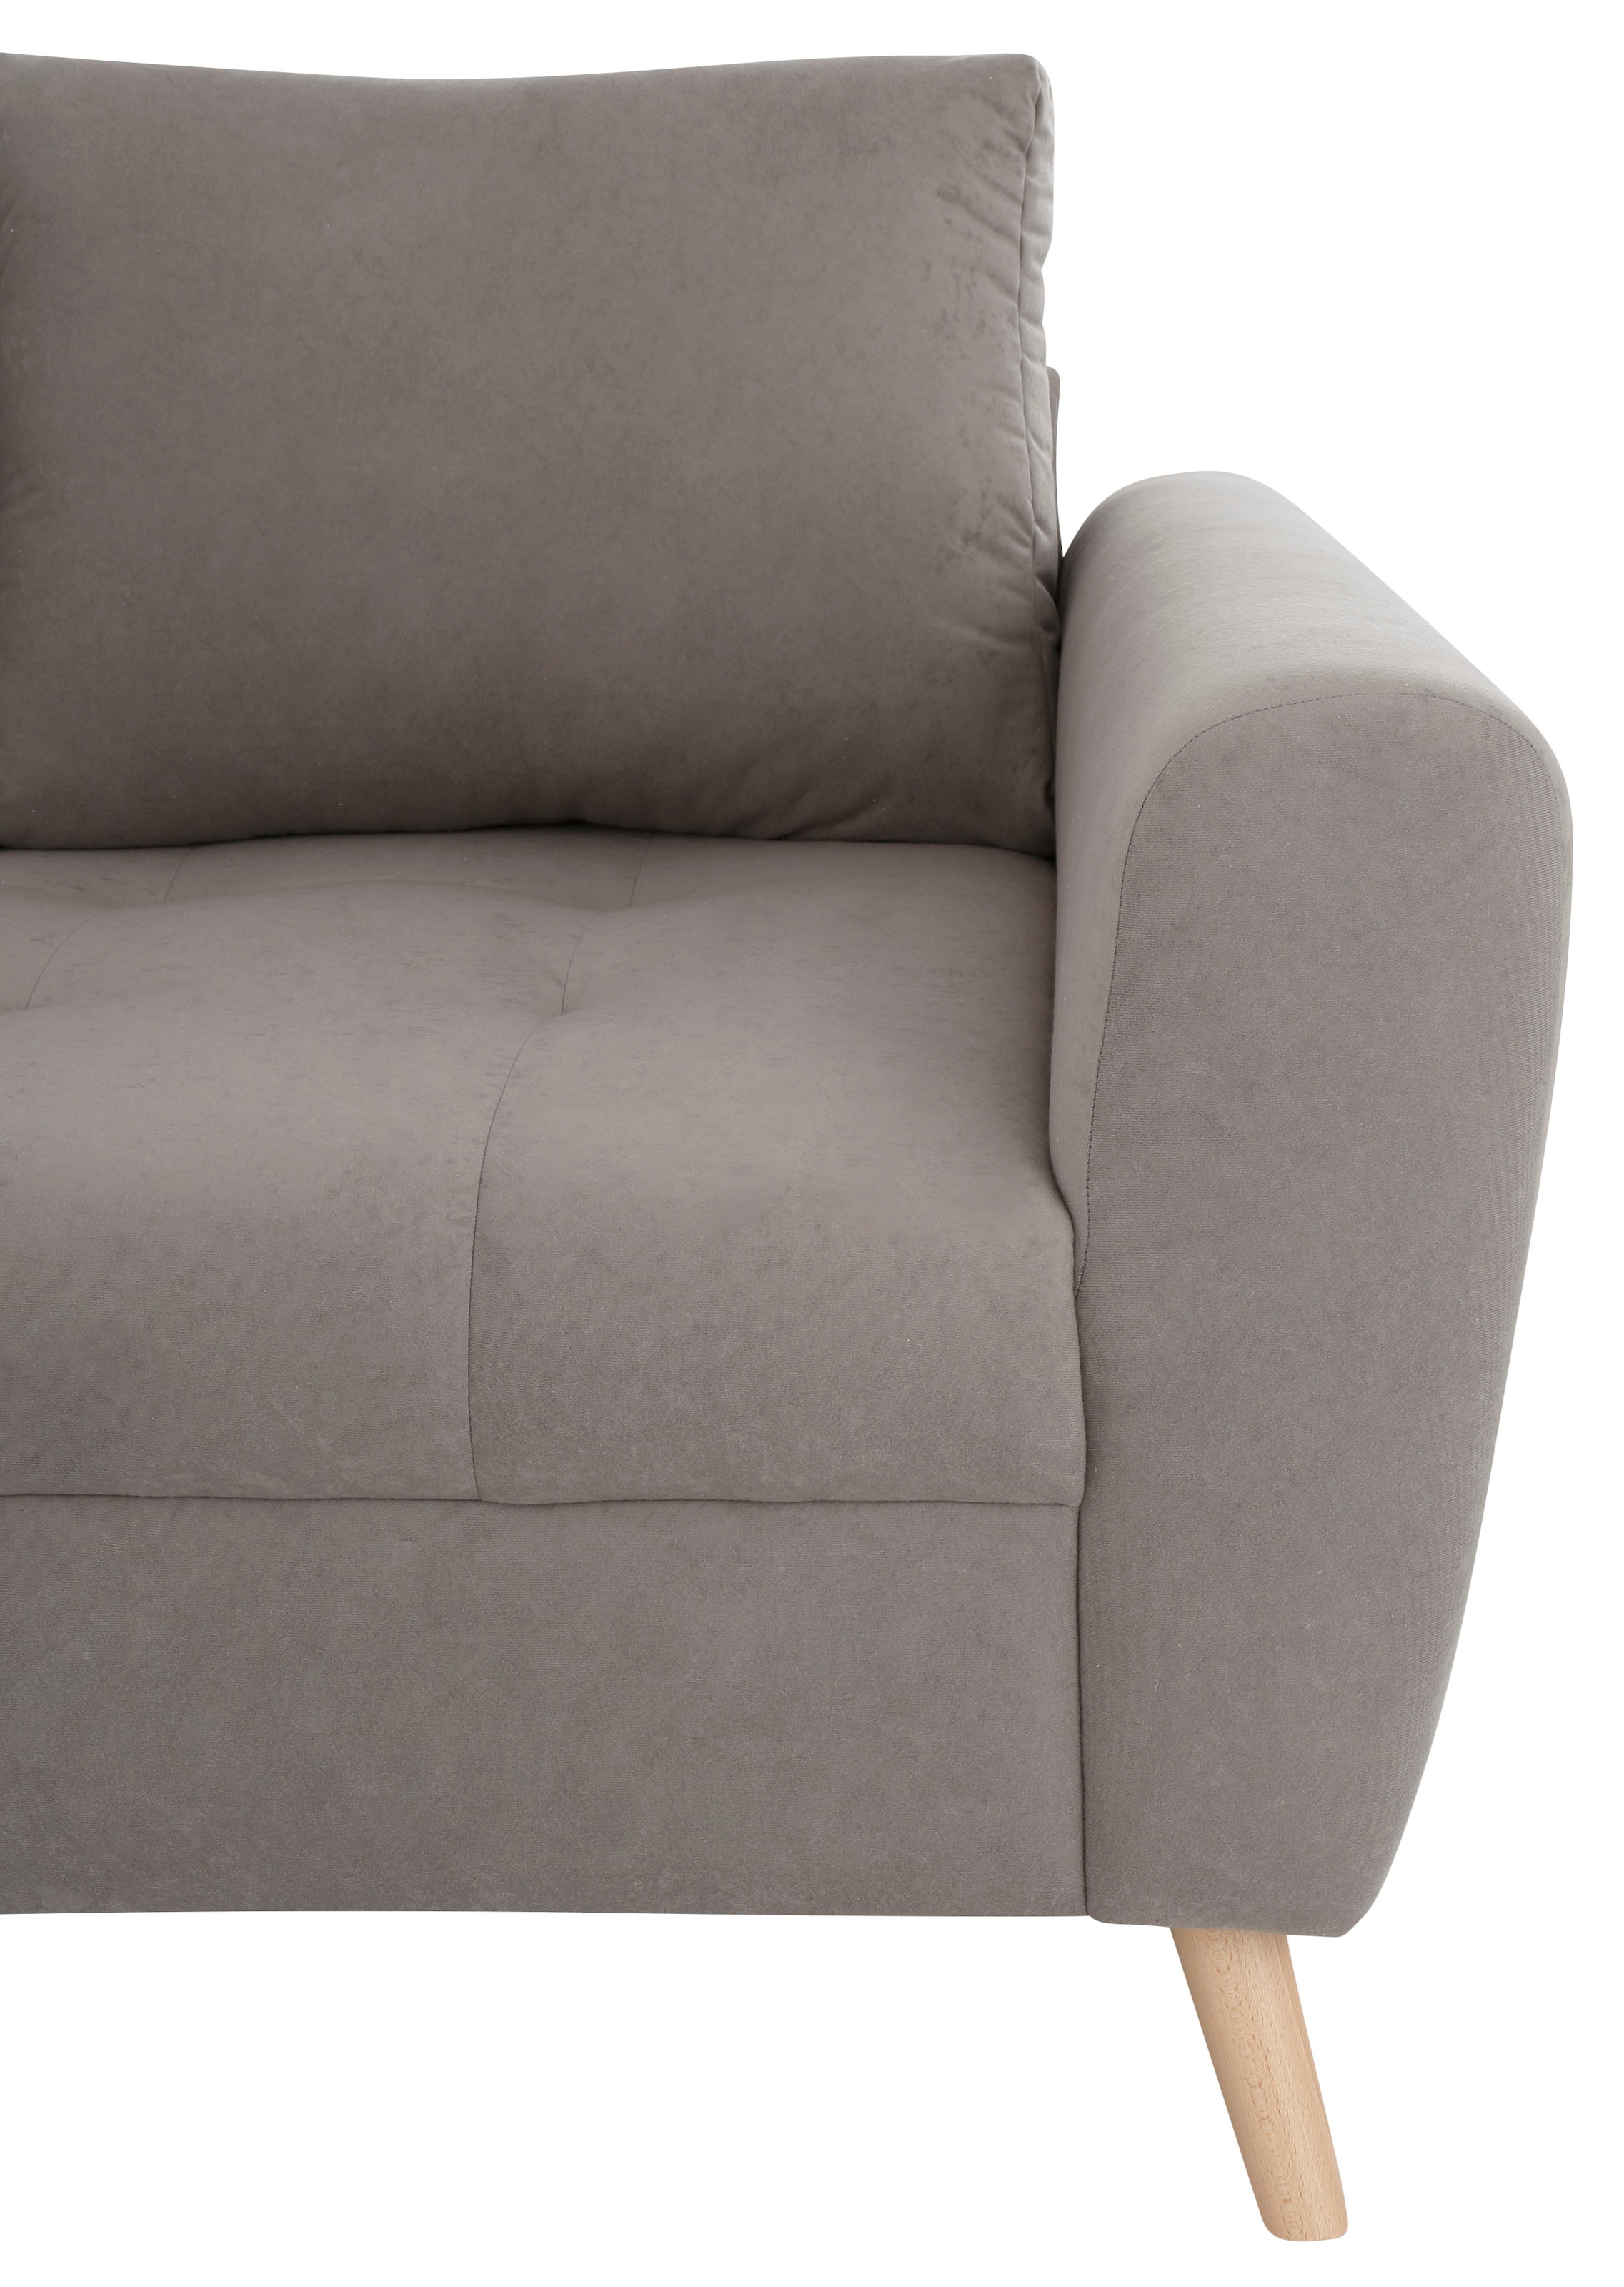 Home affaire Ecksofa »Penelope Luxus L-Form«, mit besonders hochwertiger Polsterung für bis zu 140 kg pro Sitzfläche